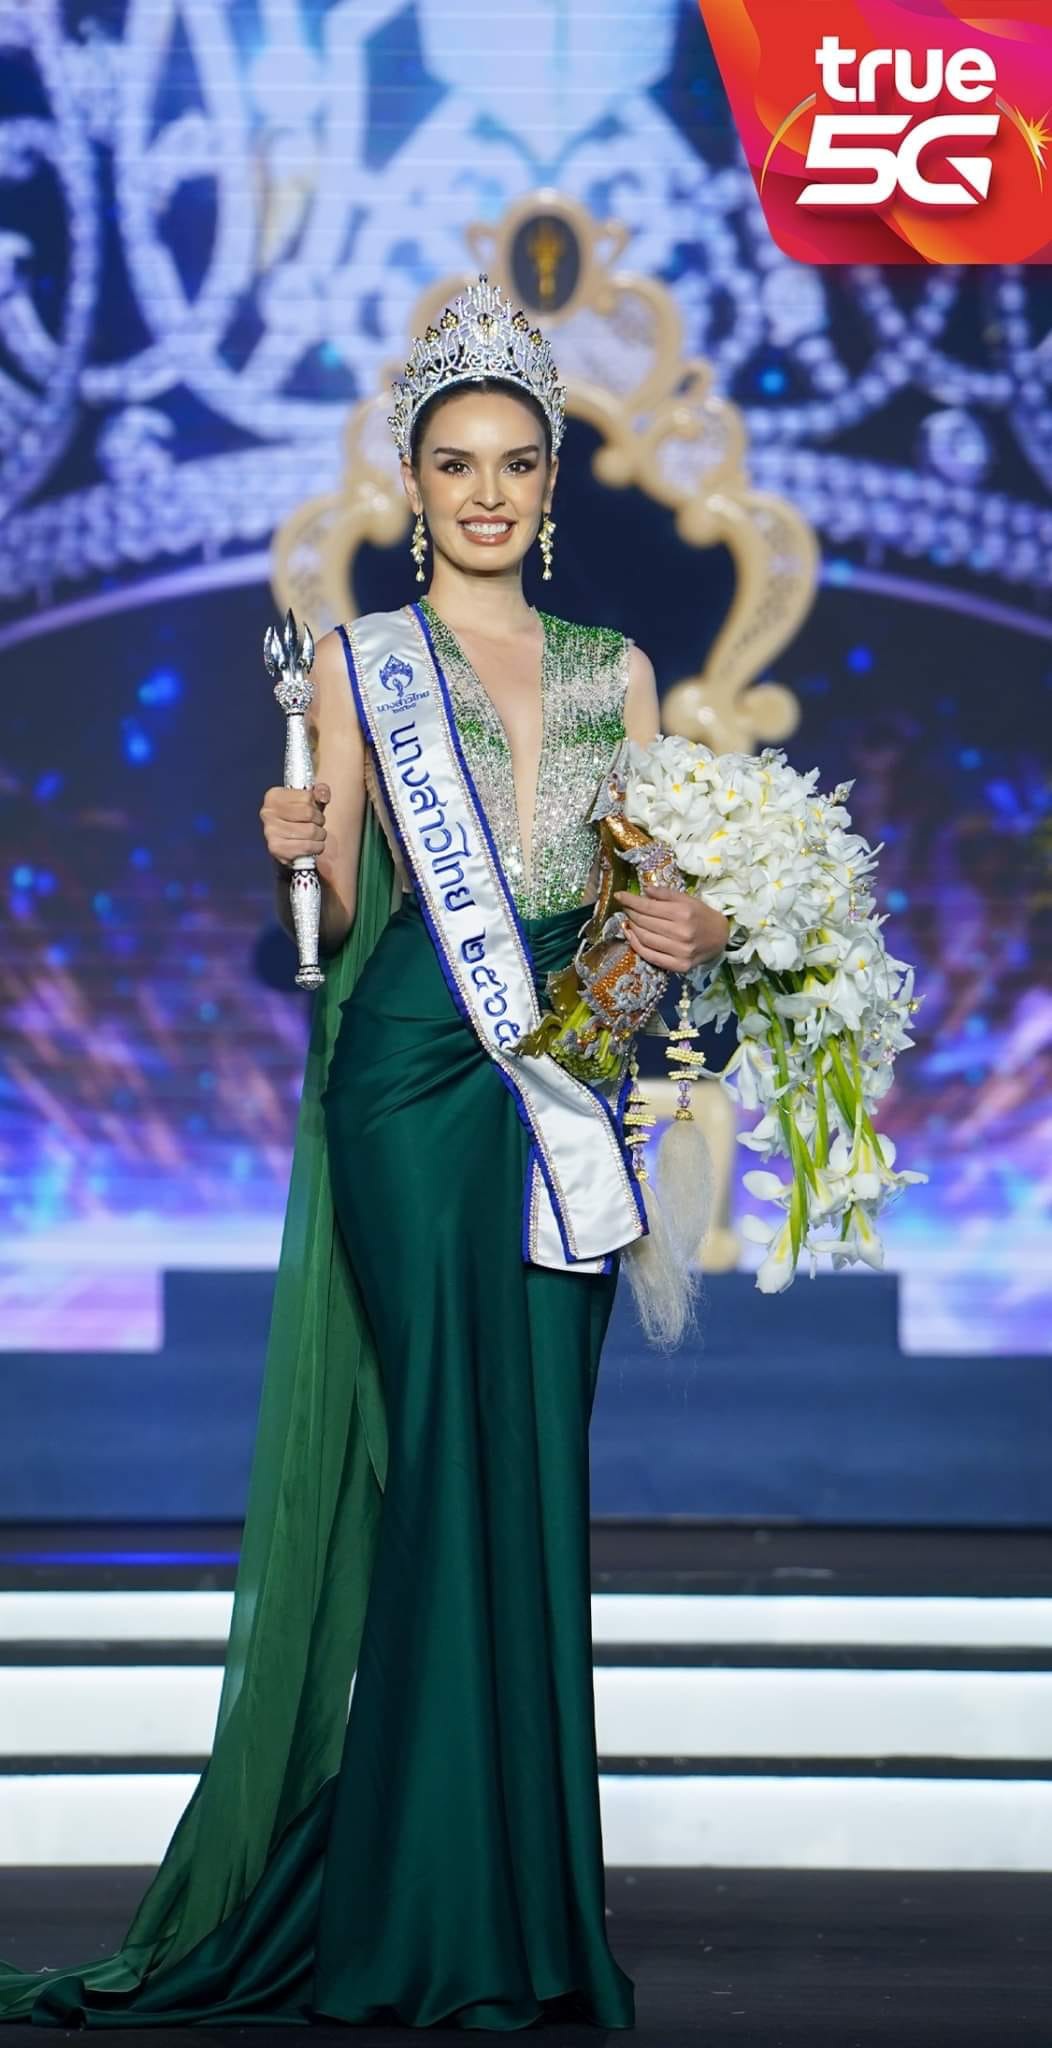 Vẻ đẹp lai cuốn hút của mỹ nhân giành ngôi vị Hoa hậu Thái Lan 2022 - Ảnh 3.